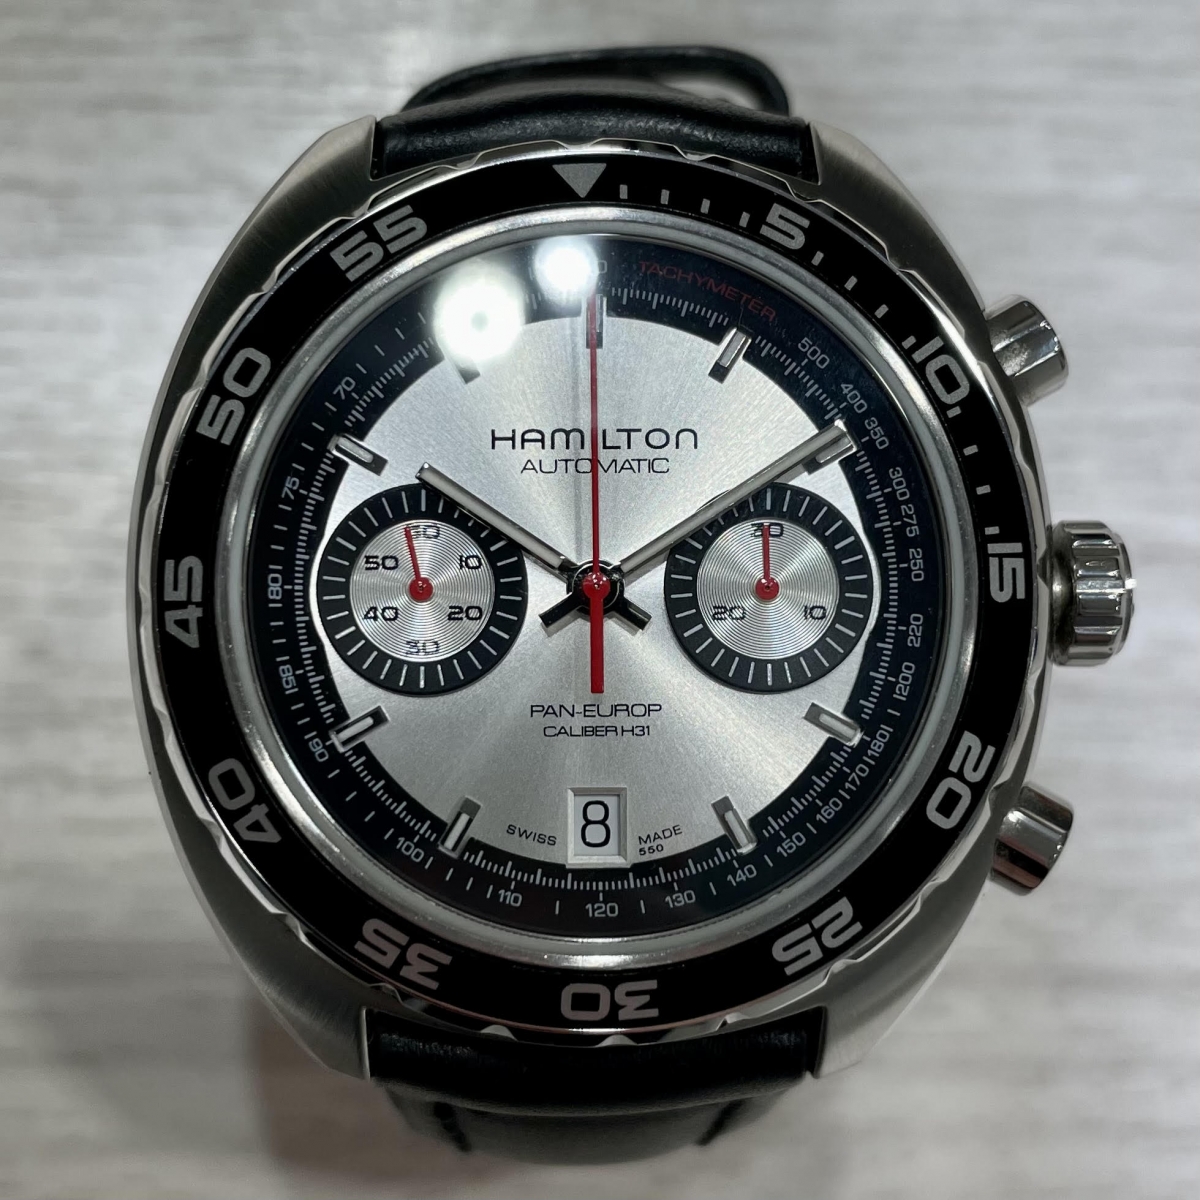 ハミルトンのH35756755 パンユーロ クロノグラフ 自動巻き 腕時計の買取実績です。